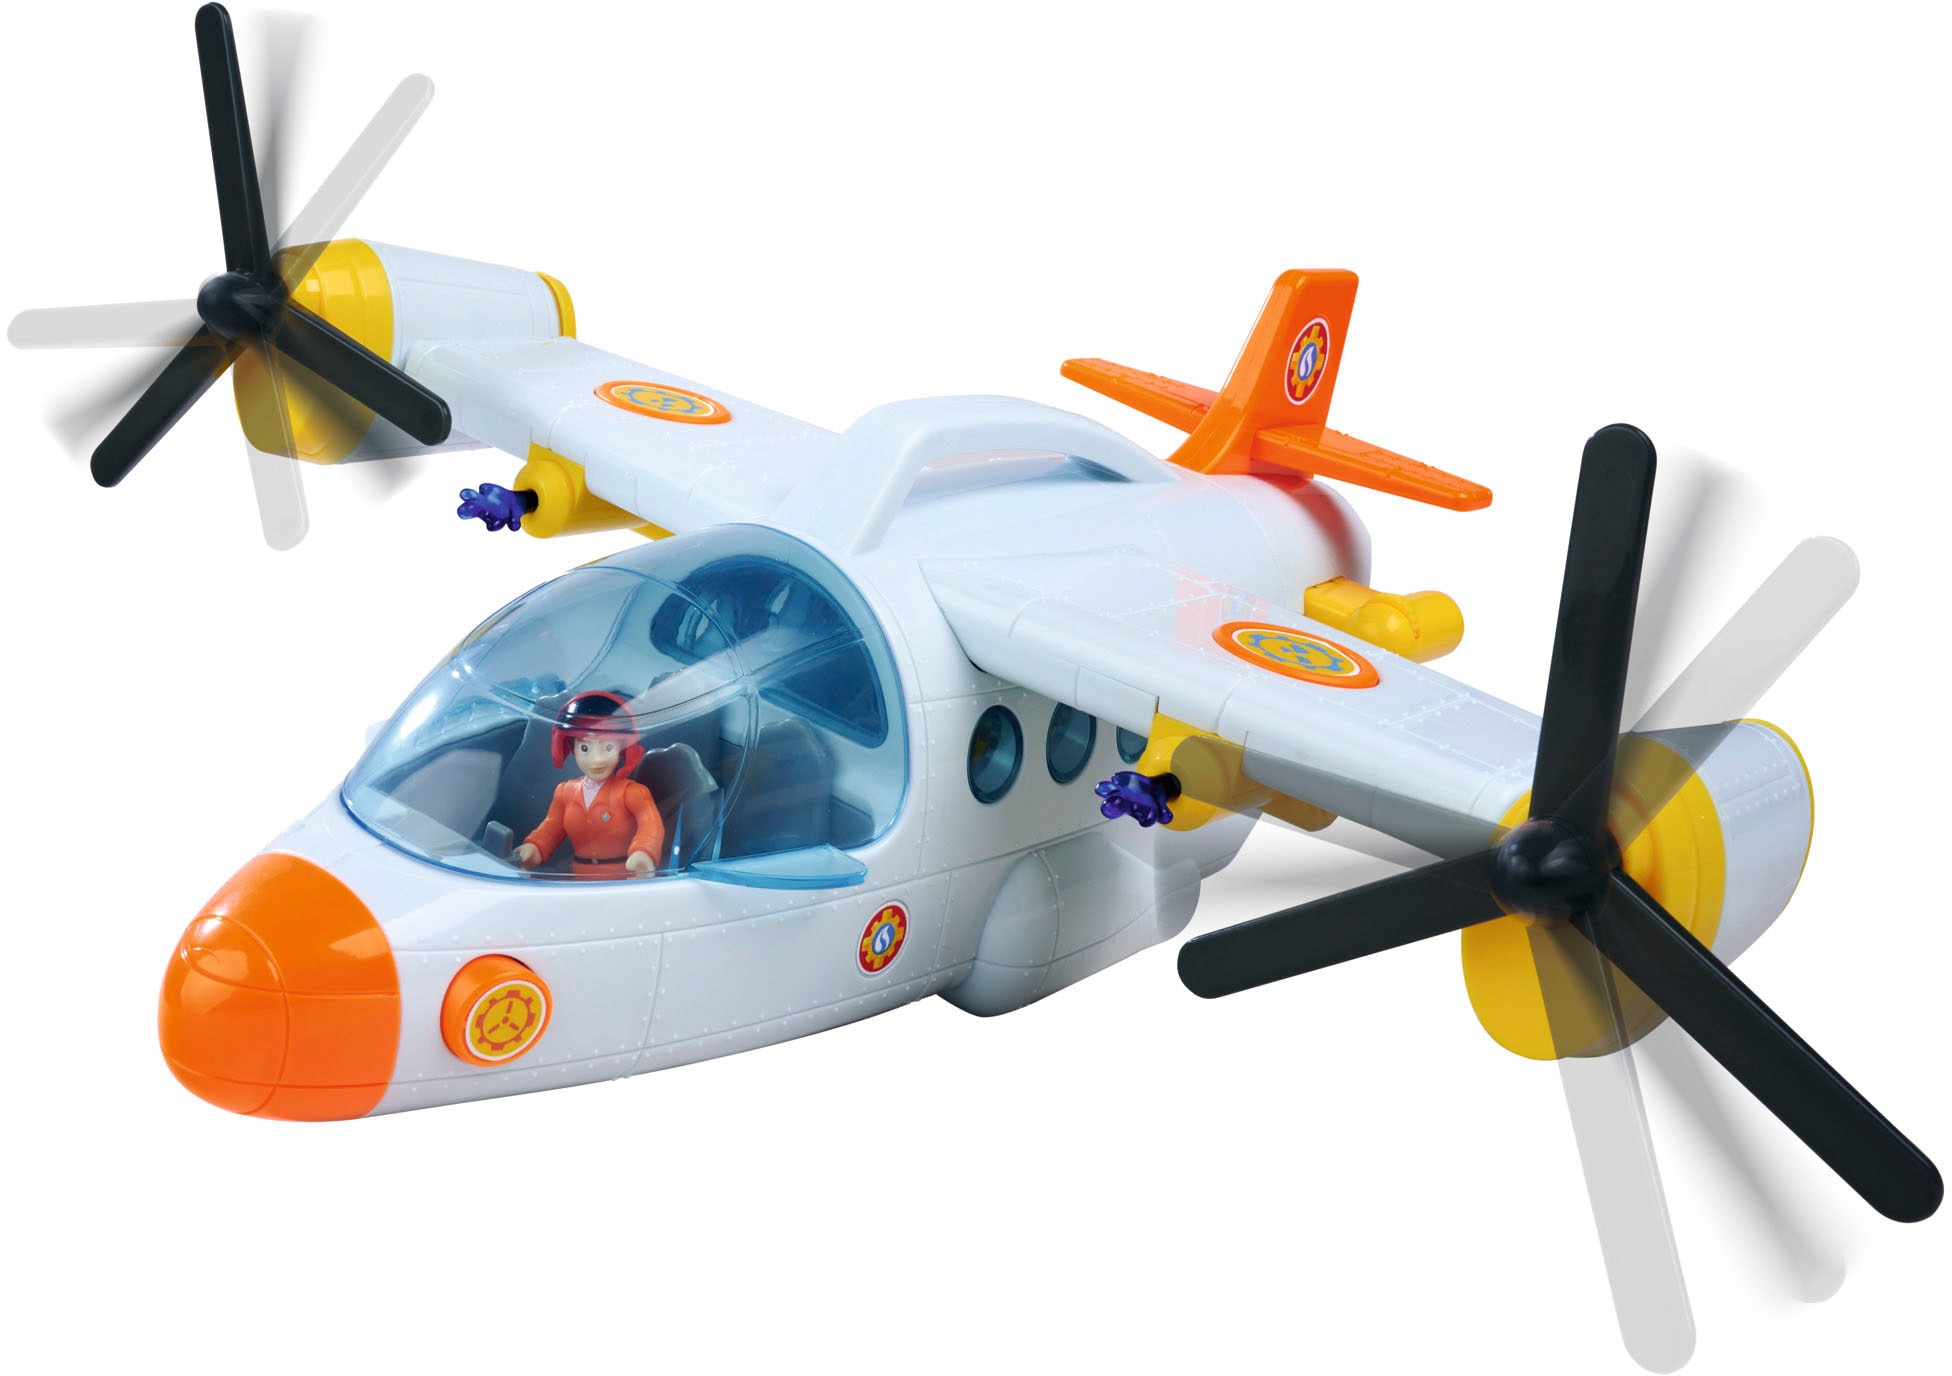 SIMBA Spielzeug-Flugzeug »Feuerwehrmann Sam Fire Swift Rettungsflugzeug«, mit Licht- und Soundeffekten